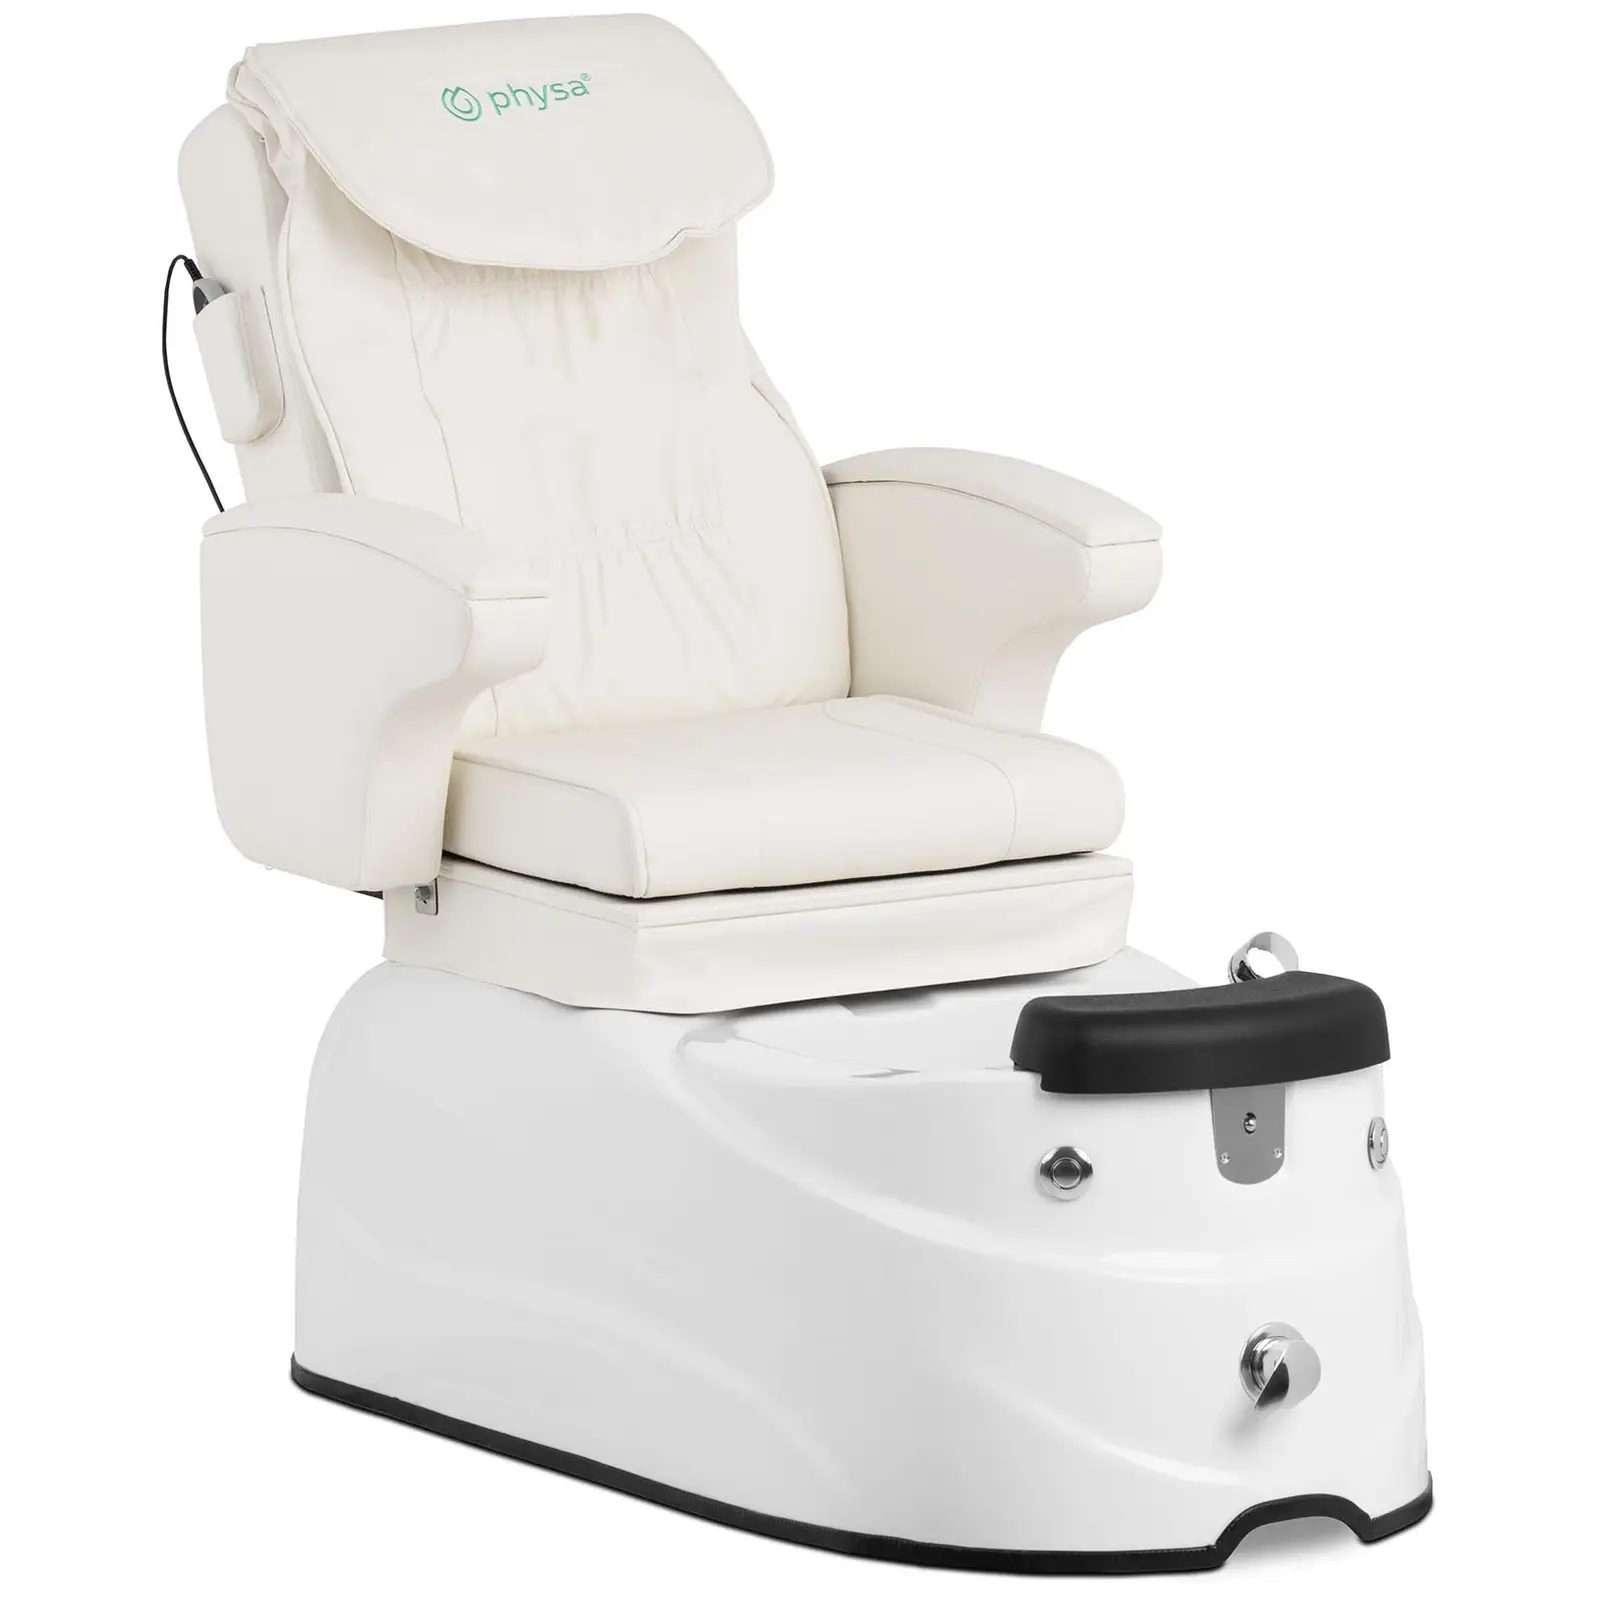 Fodplejestol med fodspa - 105 W - 150 kg - hvid - ryg- og nakkemassage